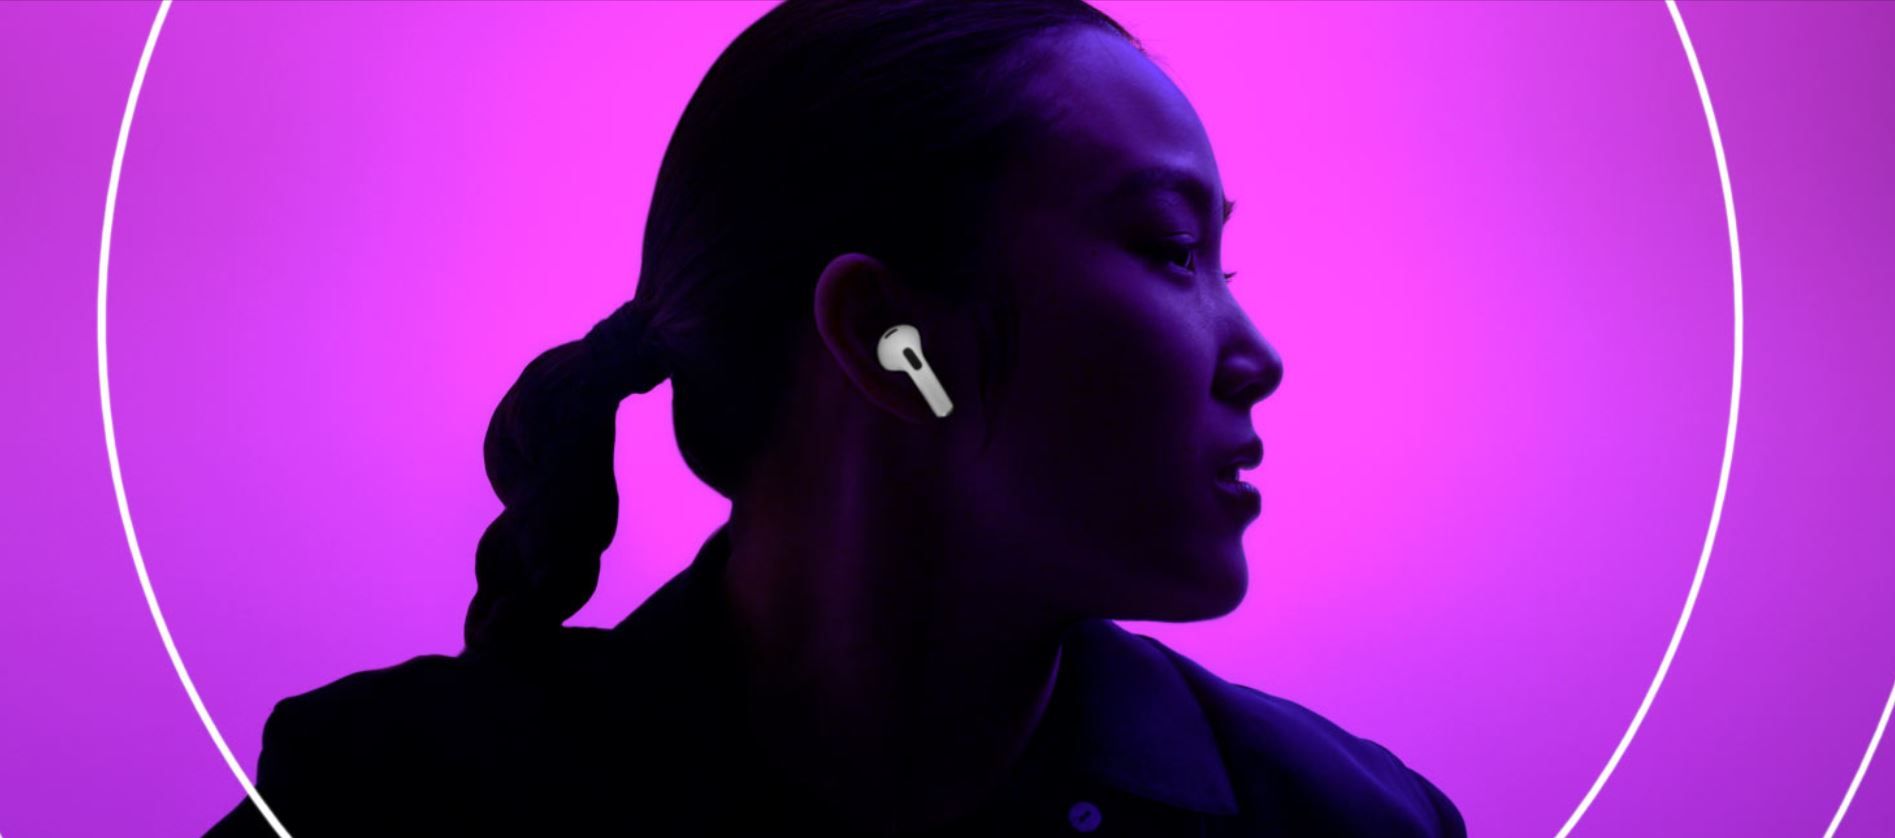  moderné slúchadlá do uší apple airpods 3 generácie Bluetooth pripojenia automatické párovanie s apple zariadeniami dotykové ovládanie odolná vode a potu krásny zvuk 